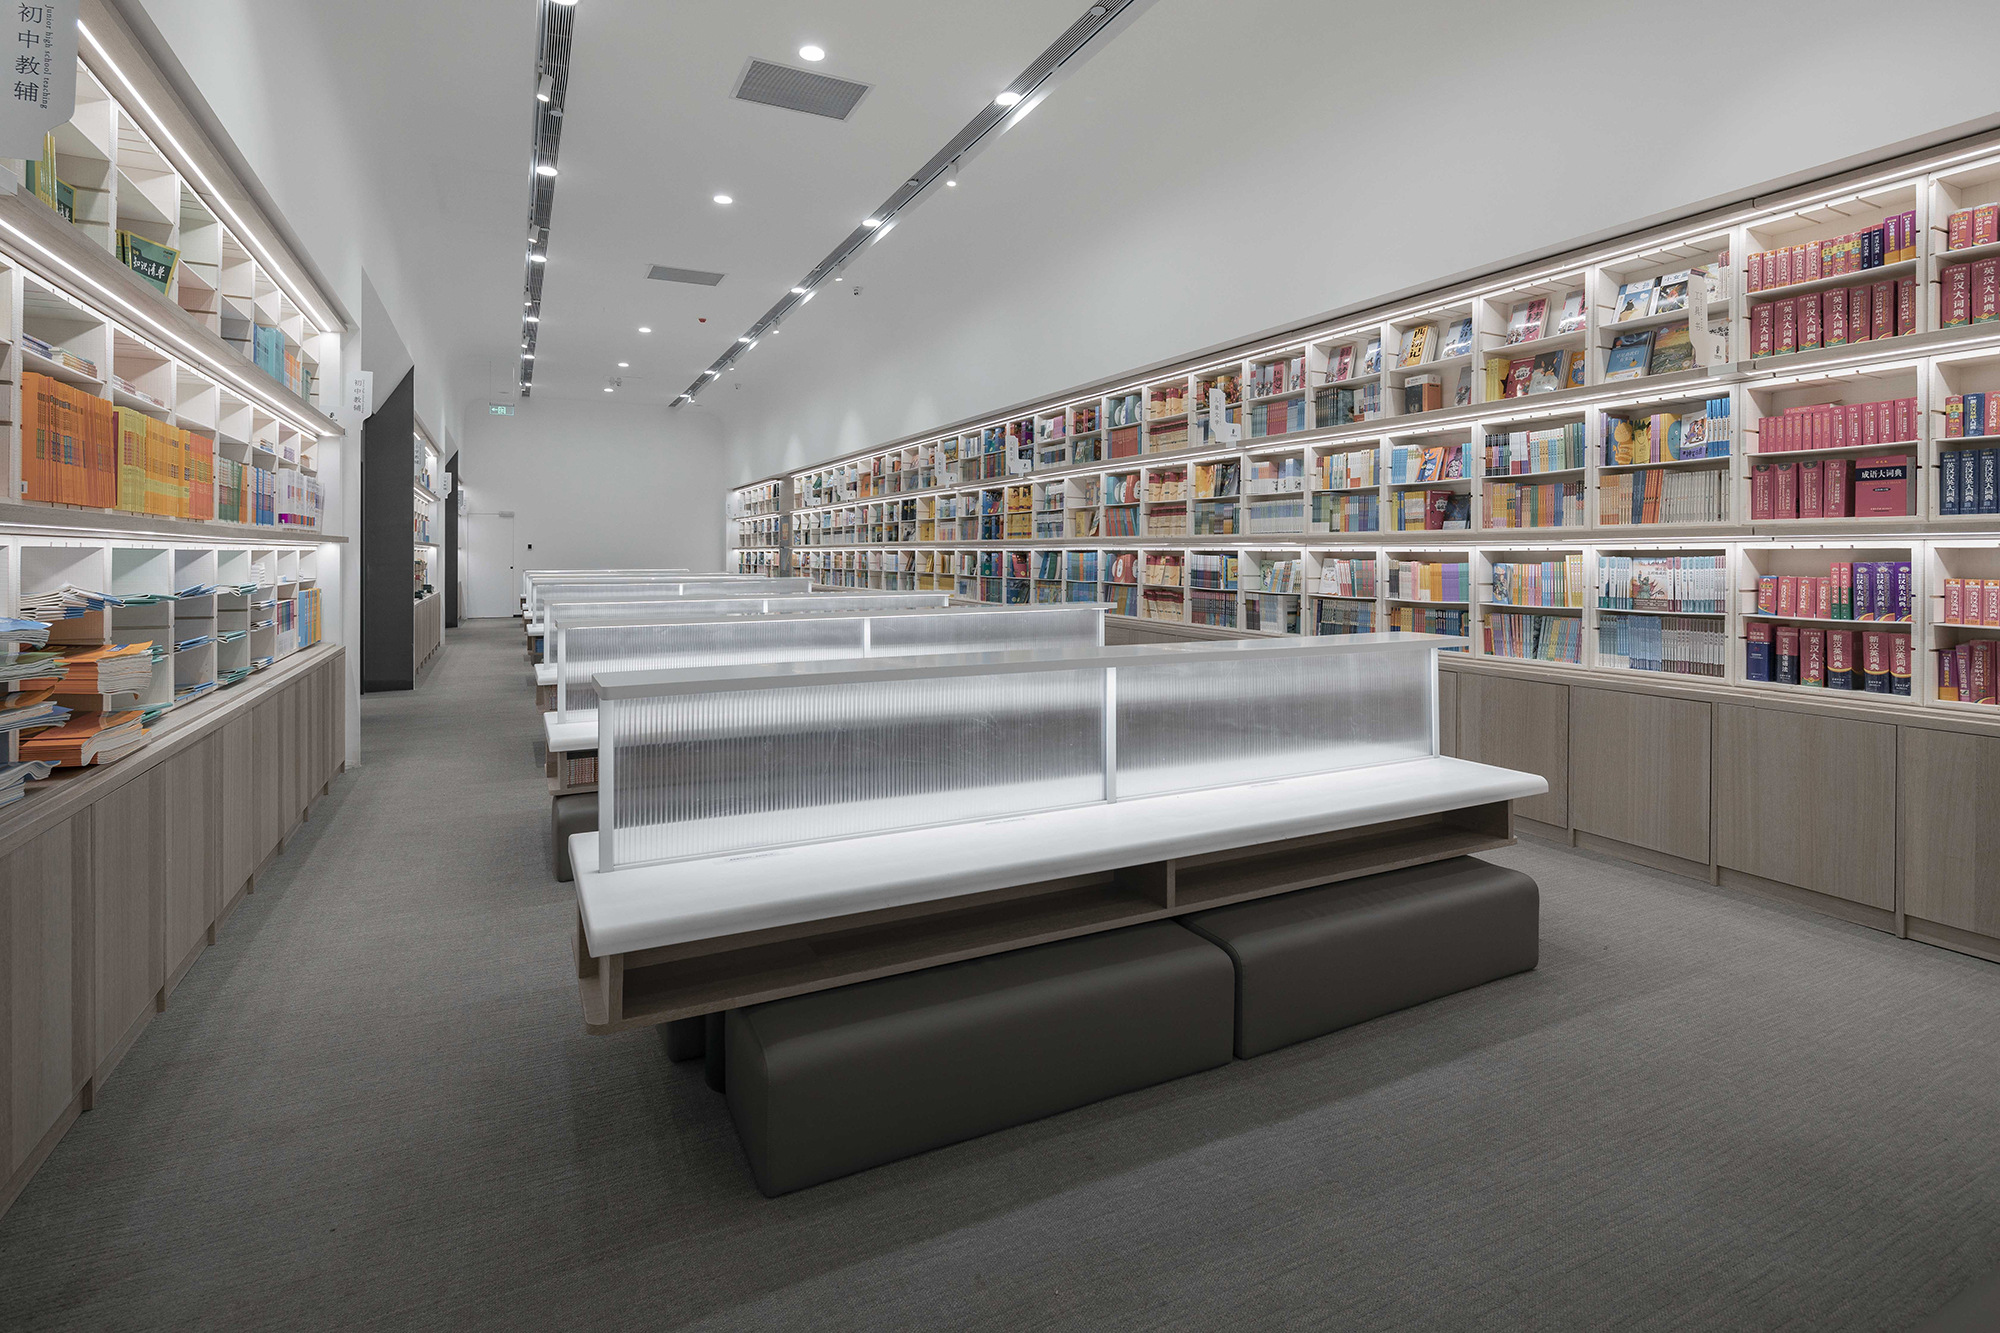 图片[10]|丰东鄂邦书店与图书馆|ART-Arrakis | 建筑室内设计的创新与灵感